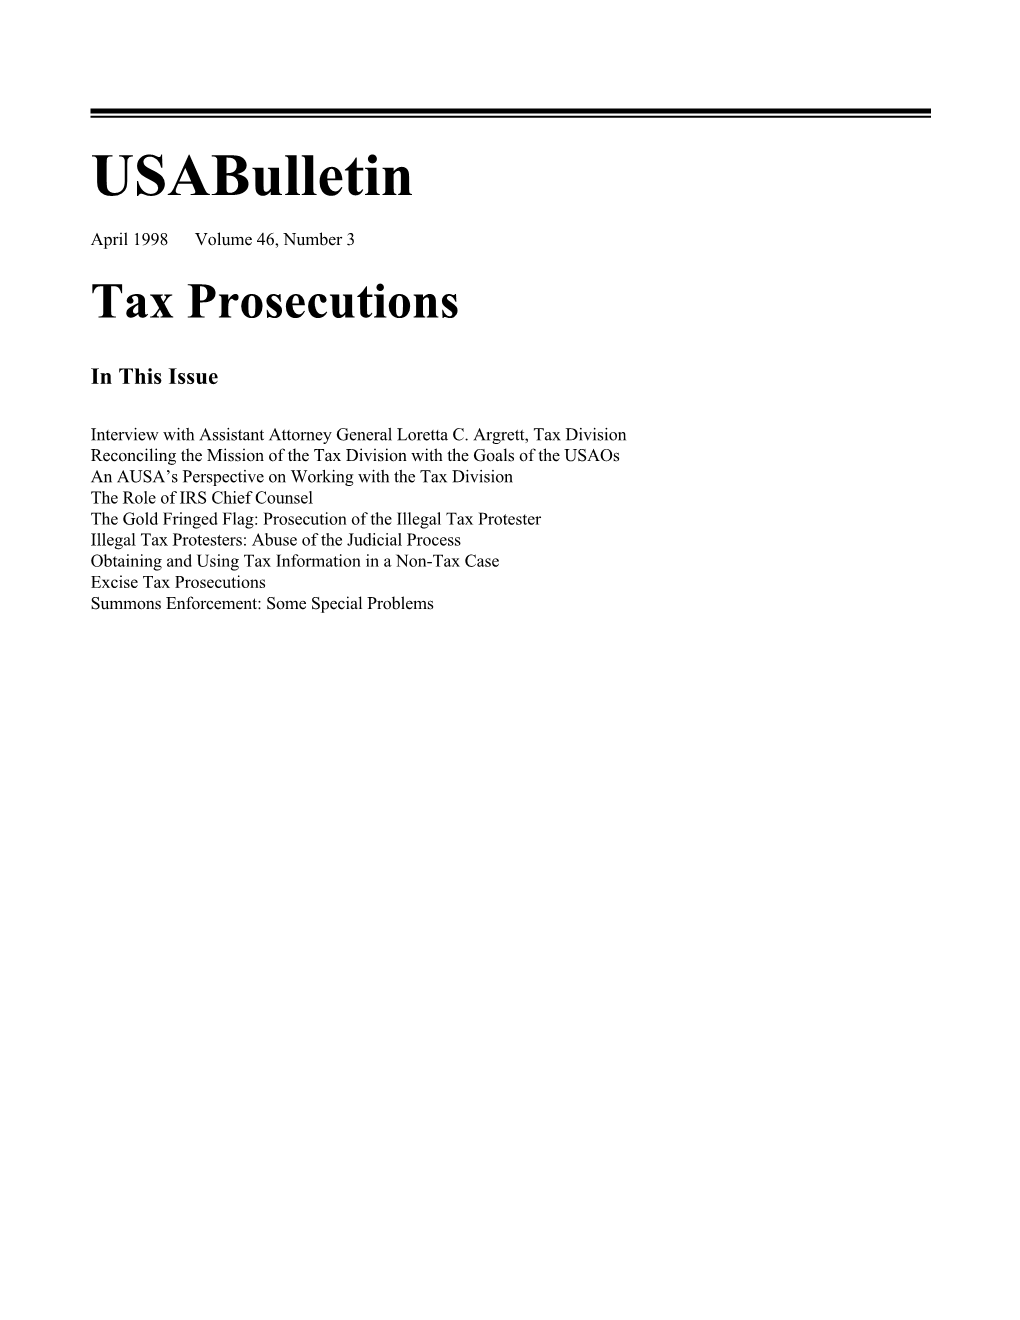 U.S. Attorneys' Bulletin Vol 46 No 03, Tax Prosecutions